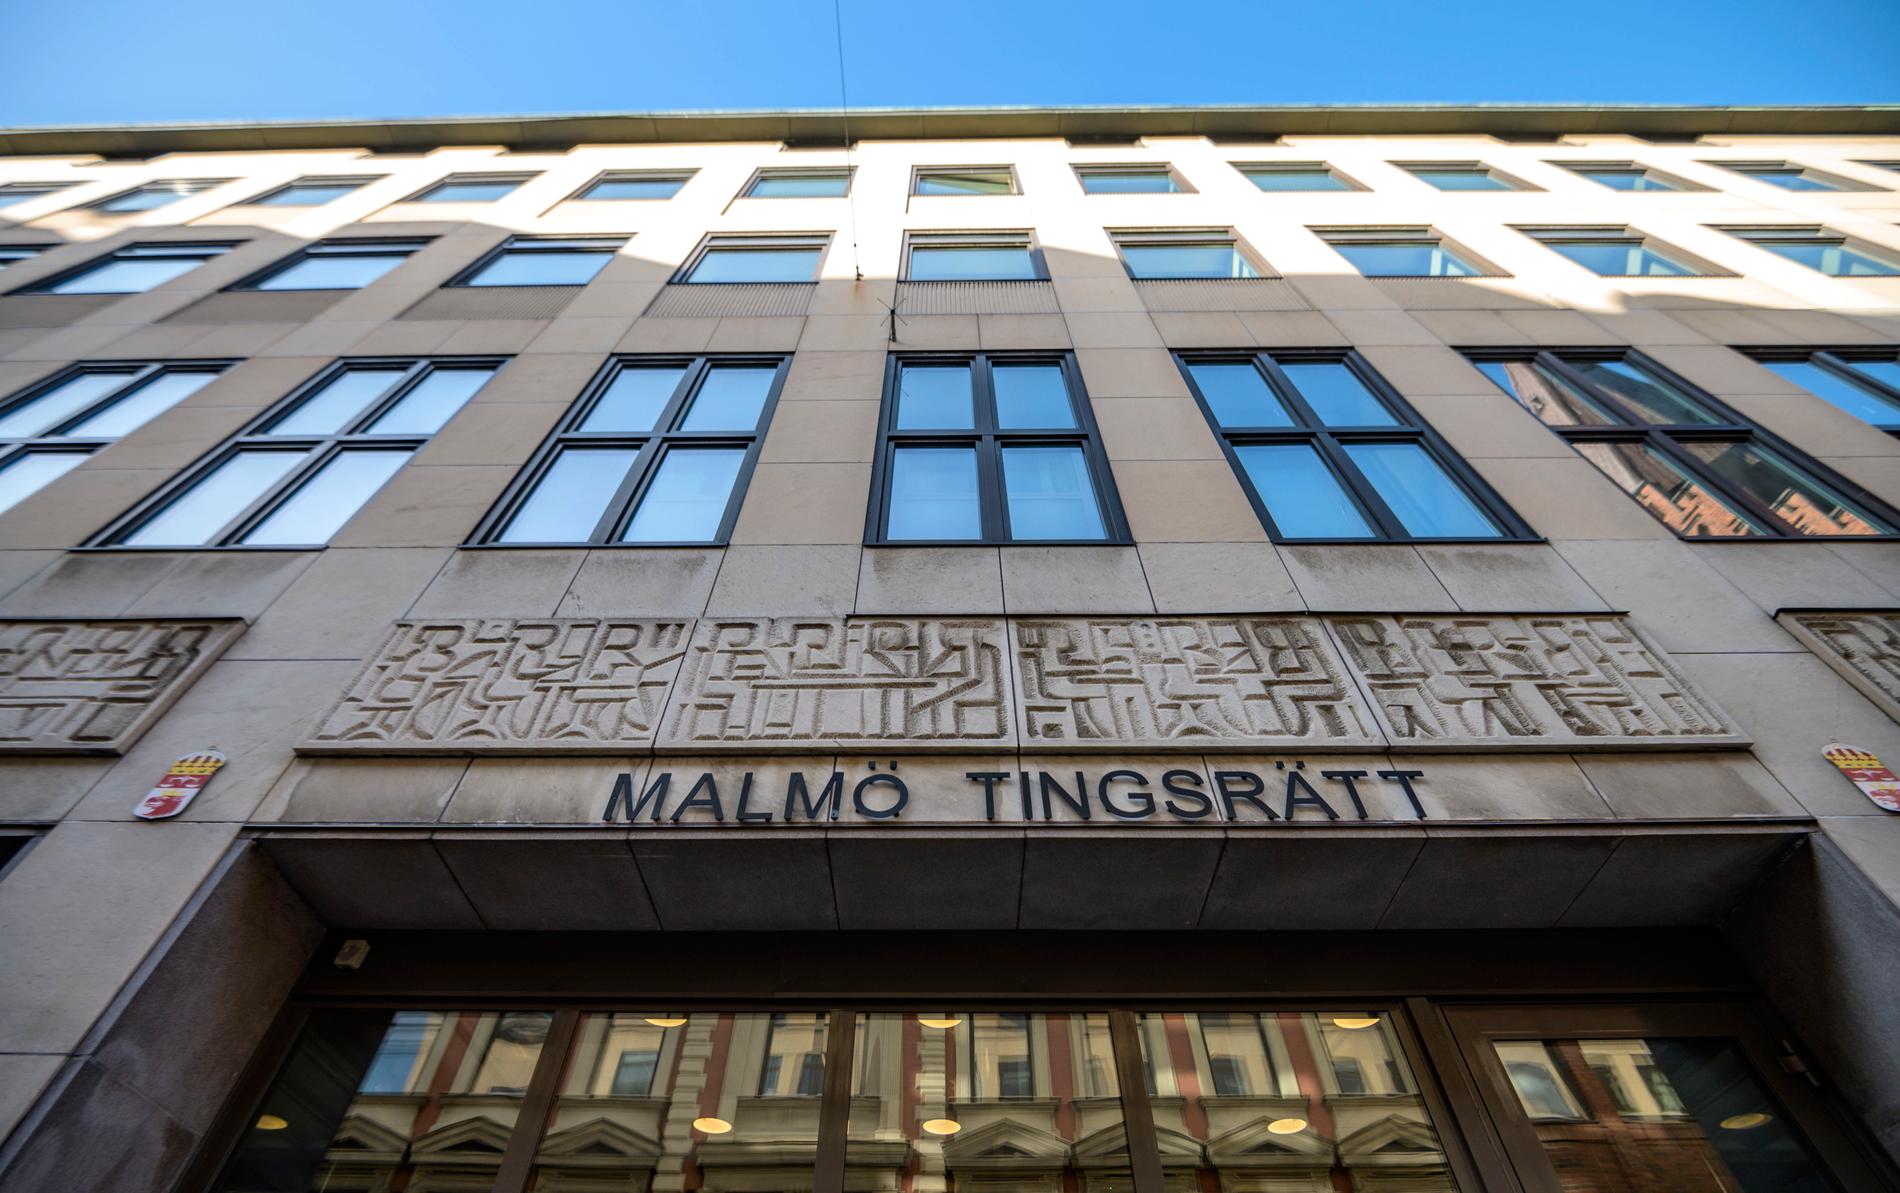 Fyra personer, som polisen grep i torsdags vid en insats mot kriminella nätverk i Malmö, har häktats. Arkivbild.